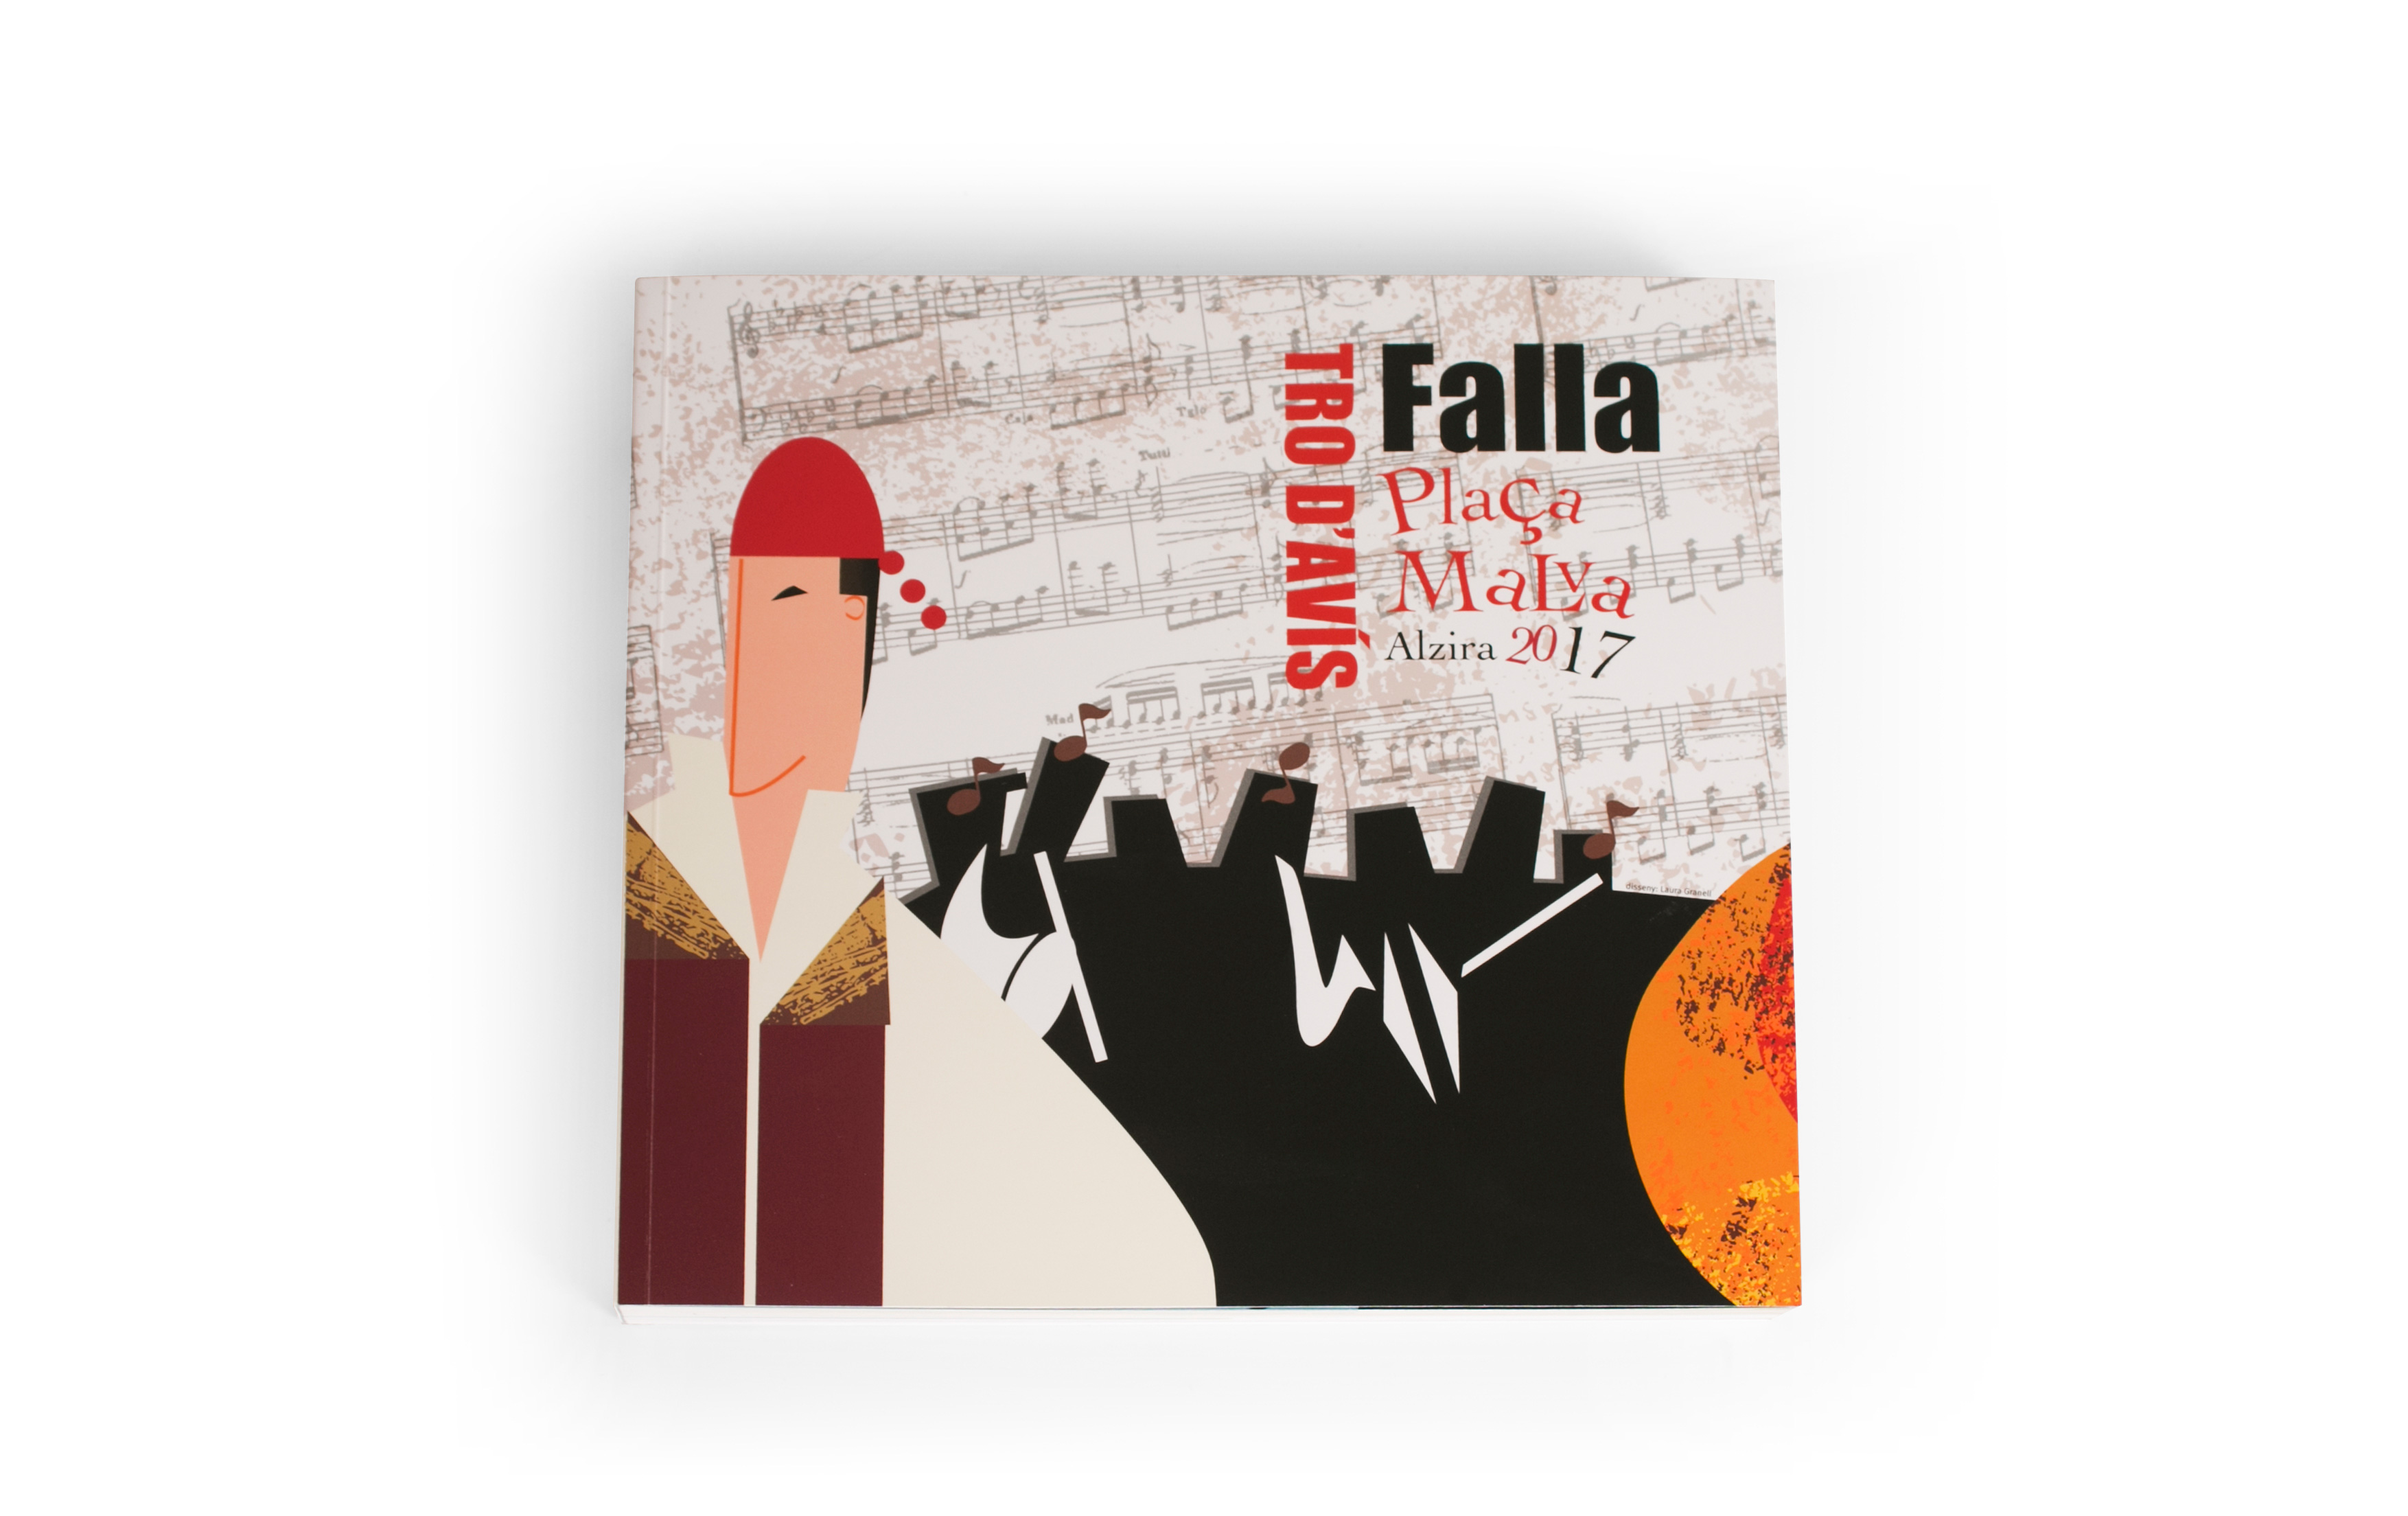 Falla Plaça Malva rinde homenaje a la canción en valenciano